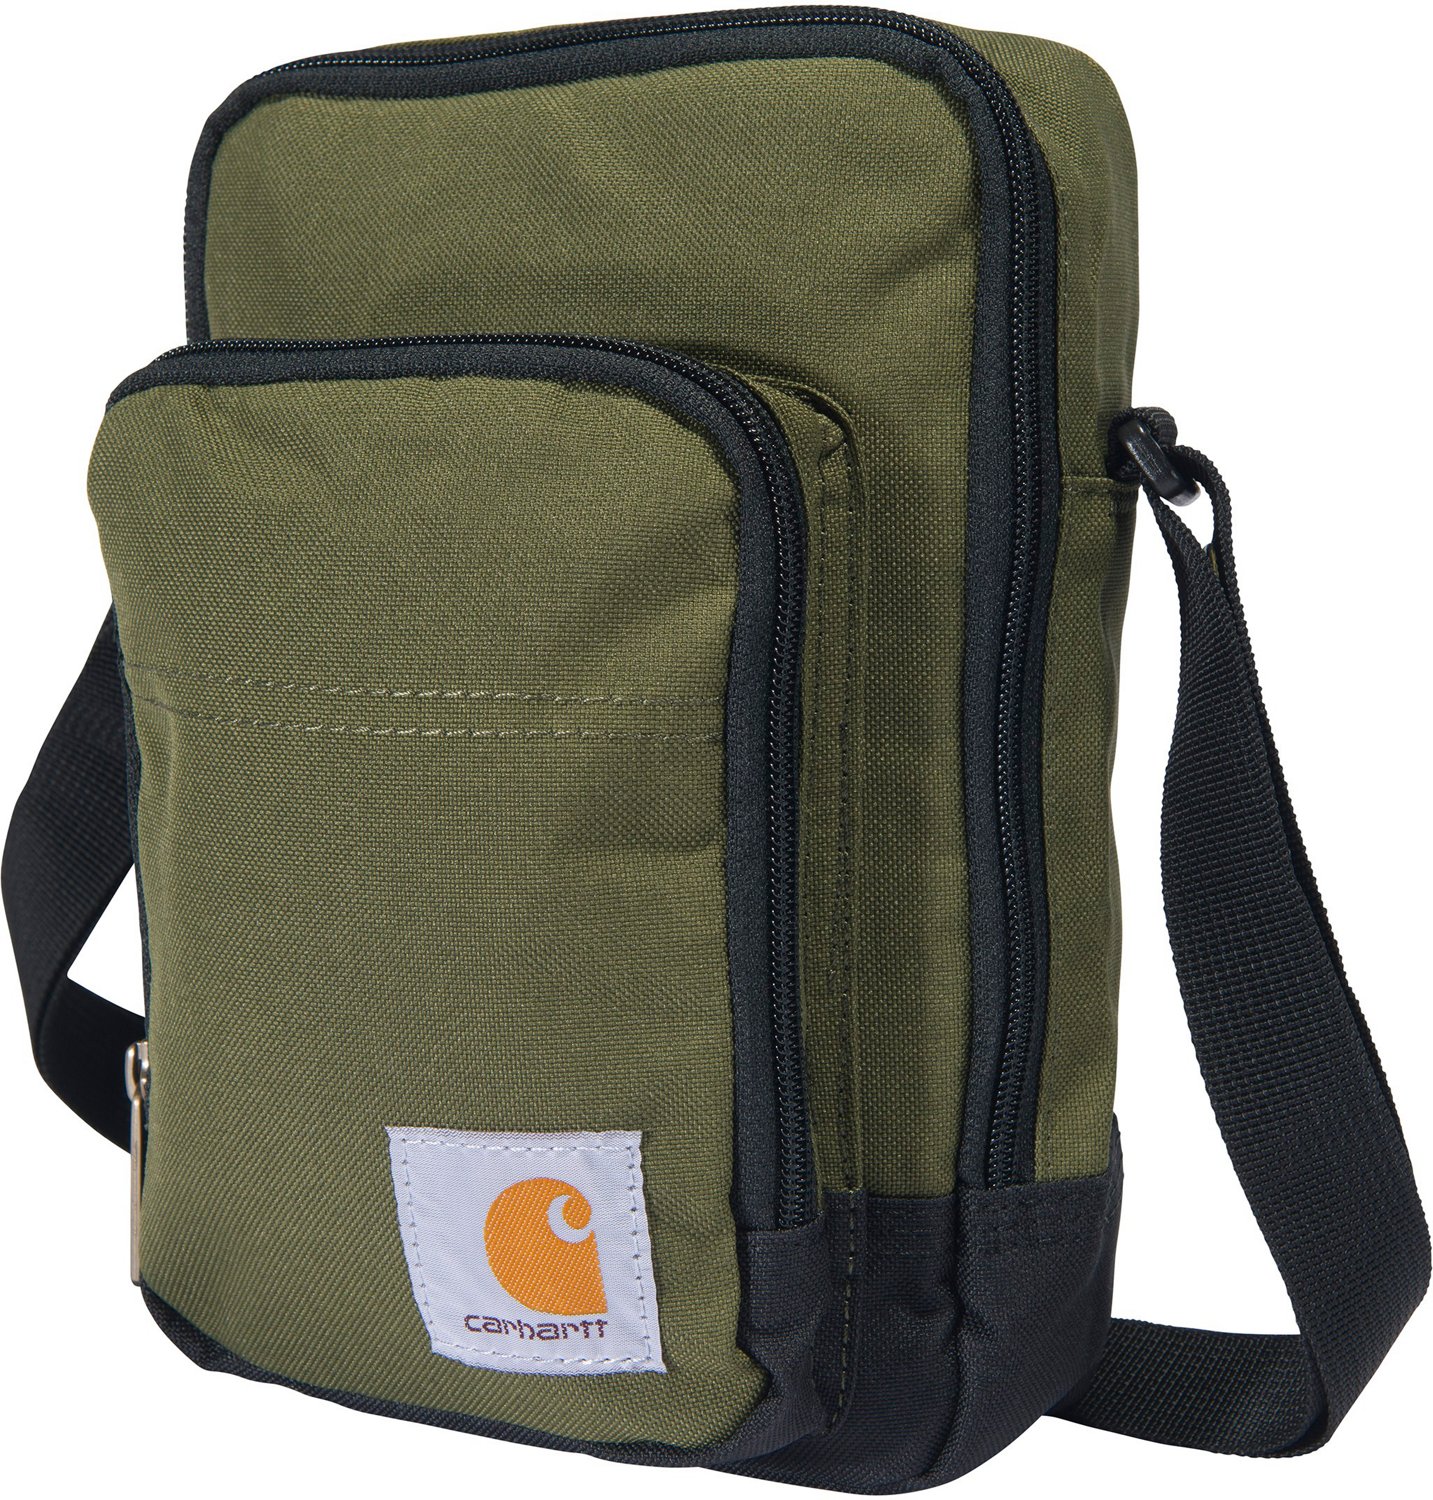 Carhartt Shoulder Outdoor Bagcarhartt Messenger Bag Sport 